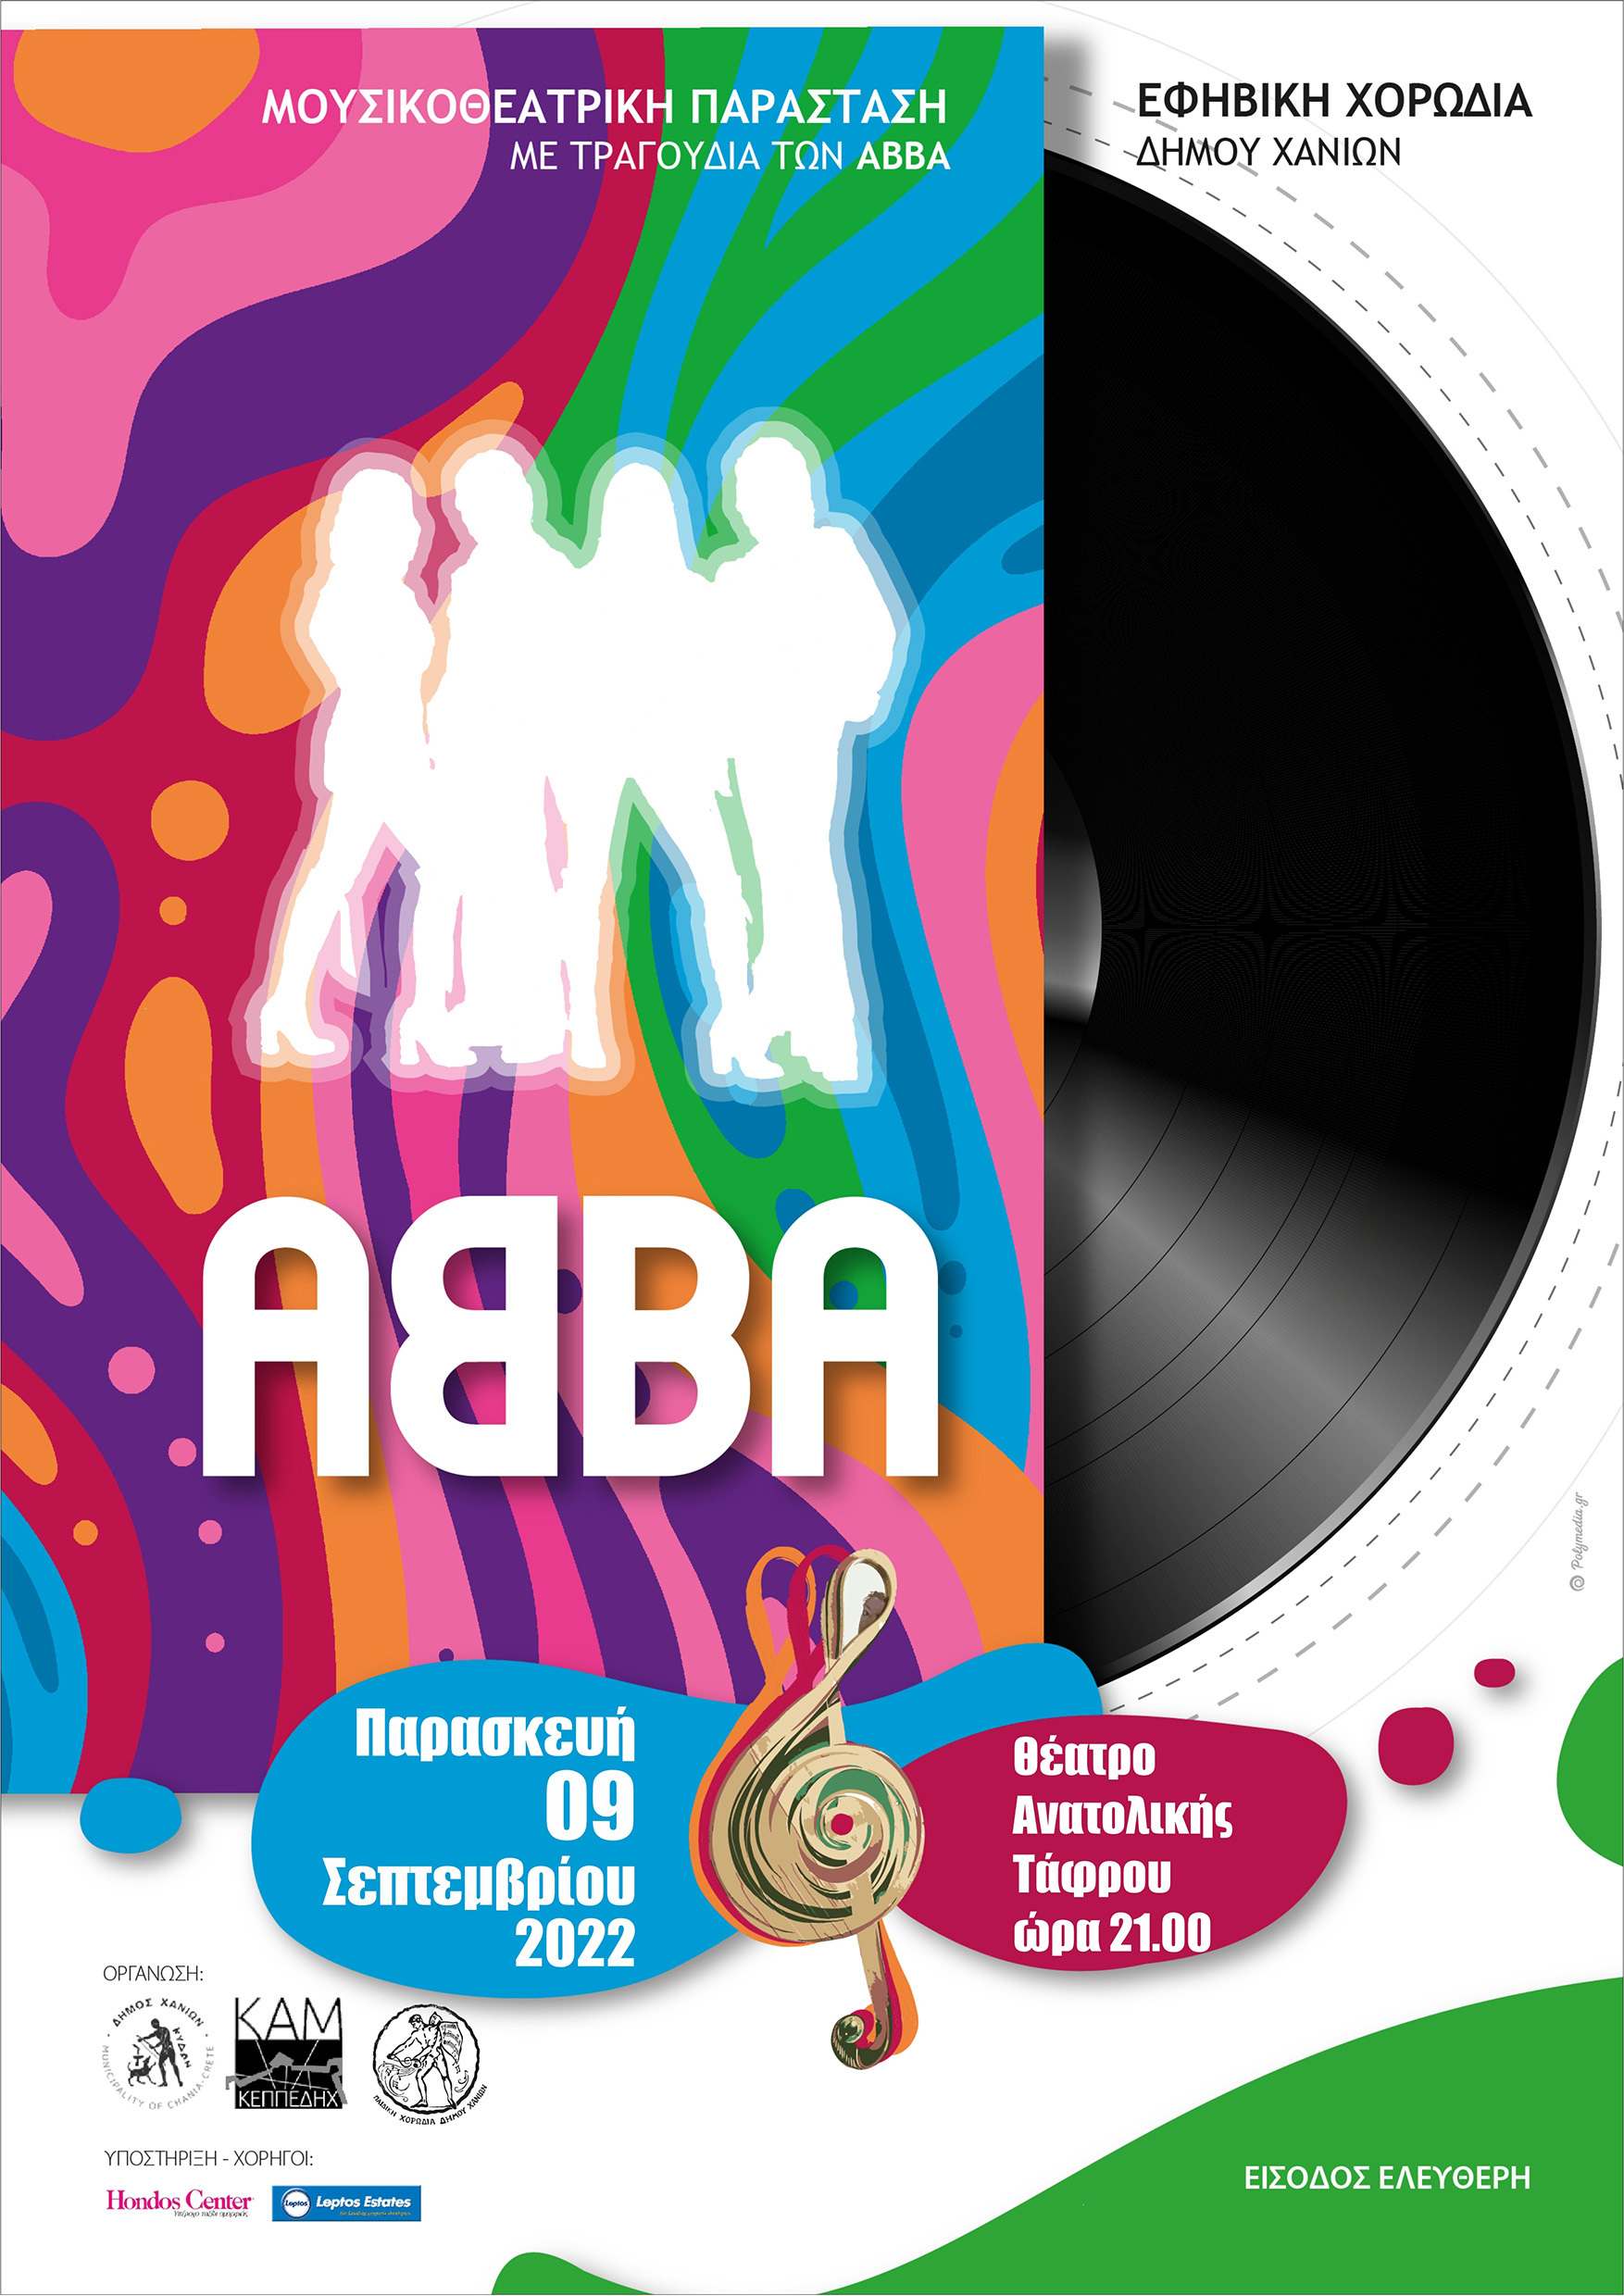 ABBA the musical